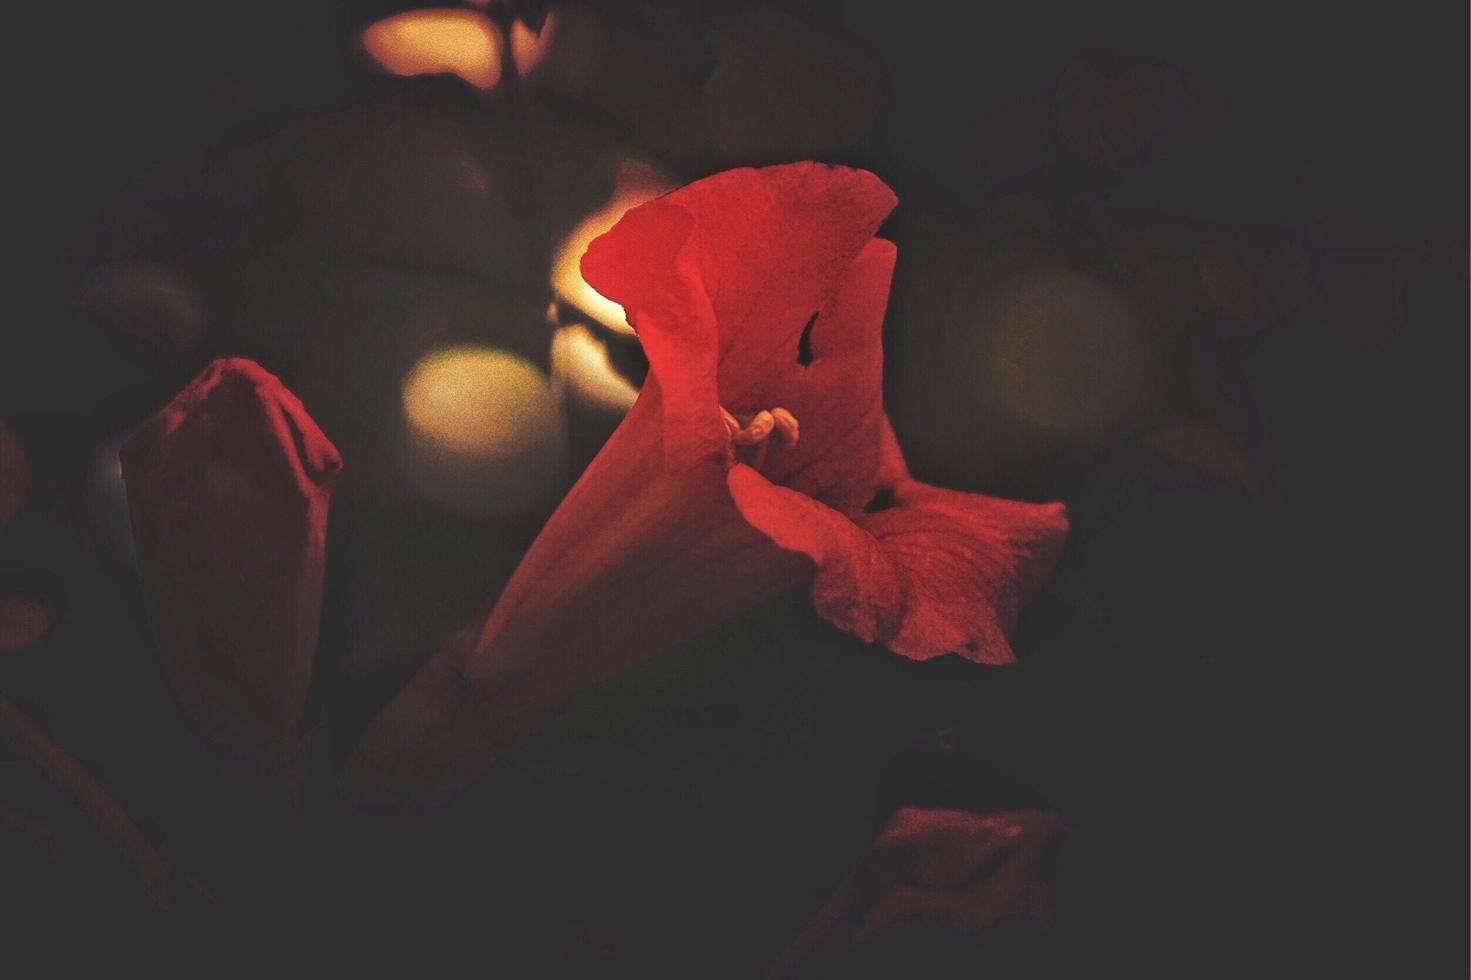 röd blomma i trädgården foto